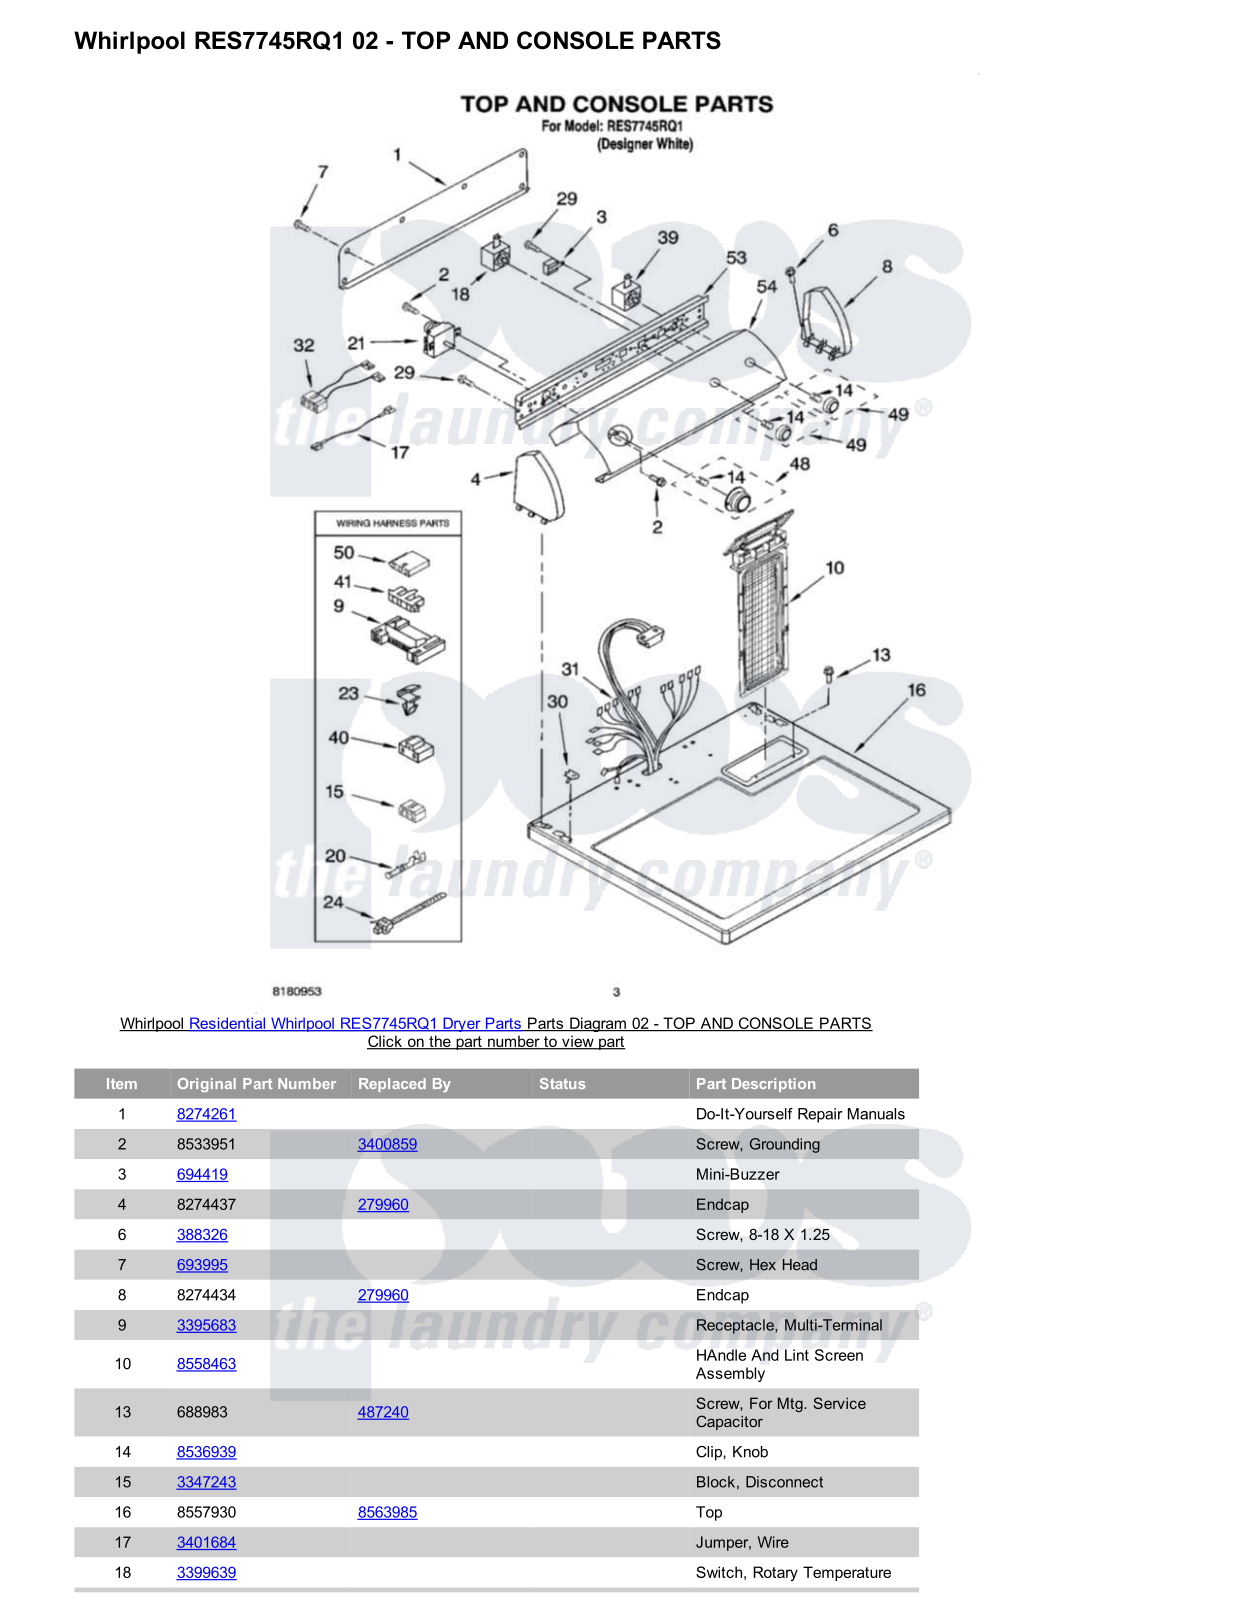 Whirlpool RES7745RQ1 Parts Diagram